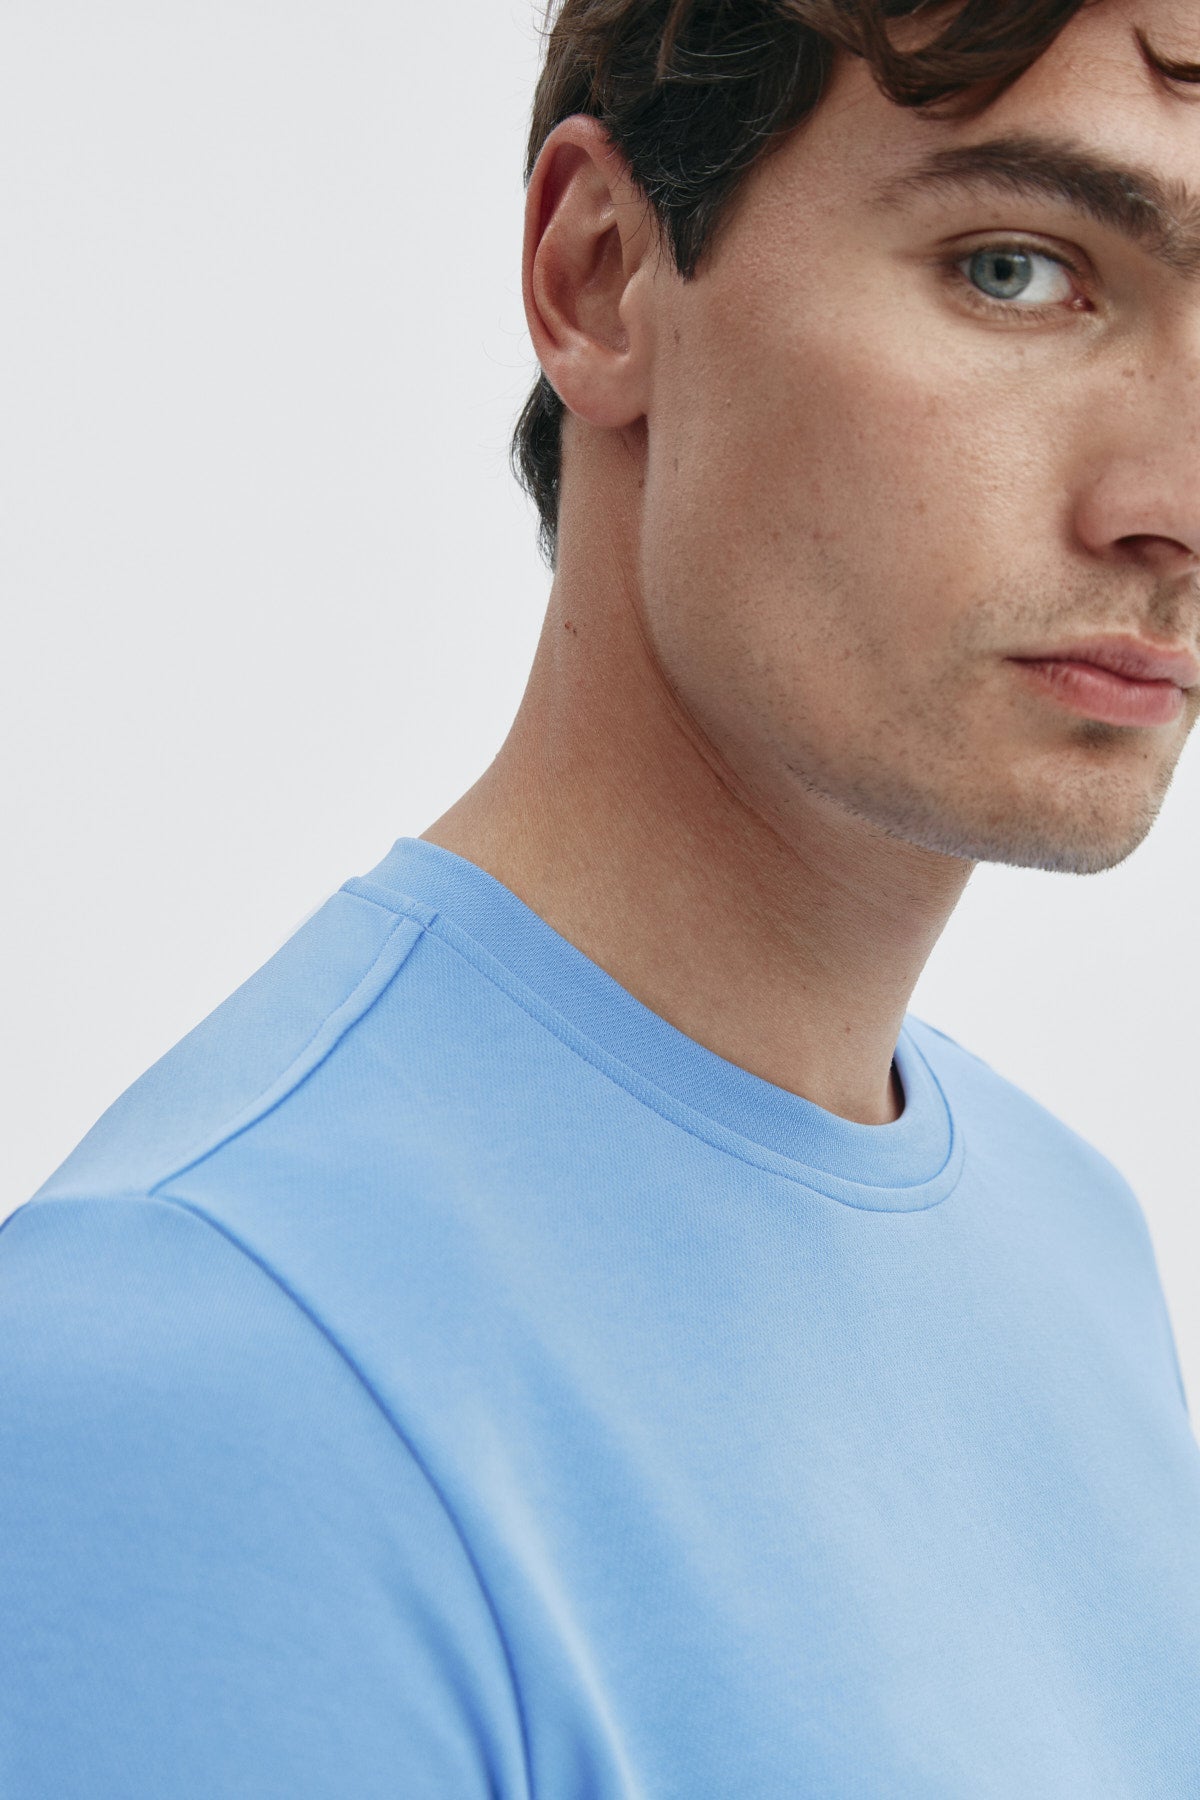 Camiseta de hombre en azul atlas de Sepiia, estilo y comodidad en una prenda duradera. Foto retrato